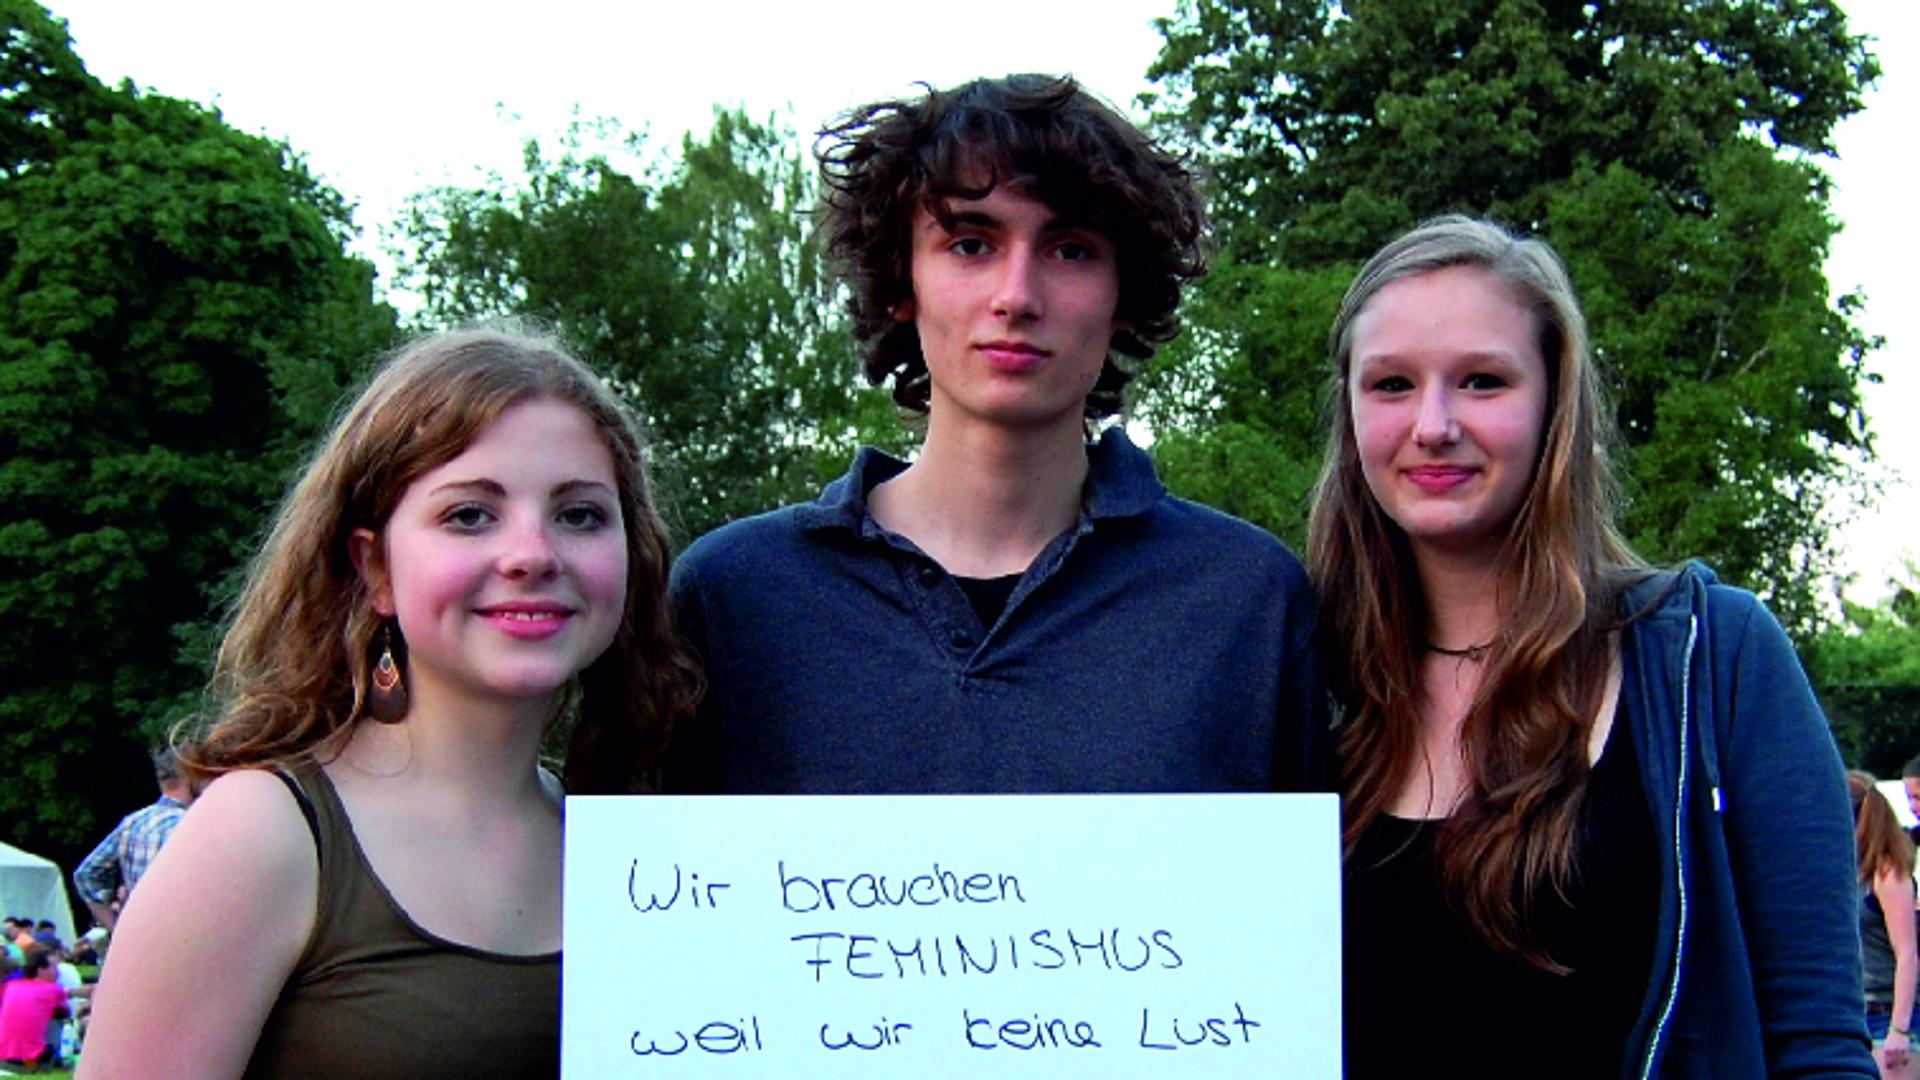 Die Kampagne „Wer braucht Feminismus?“ wendet sich gegen geschlechtsbezogene Diskriminierung.